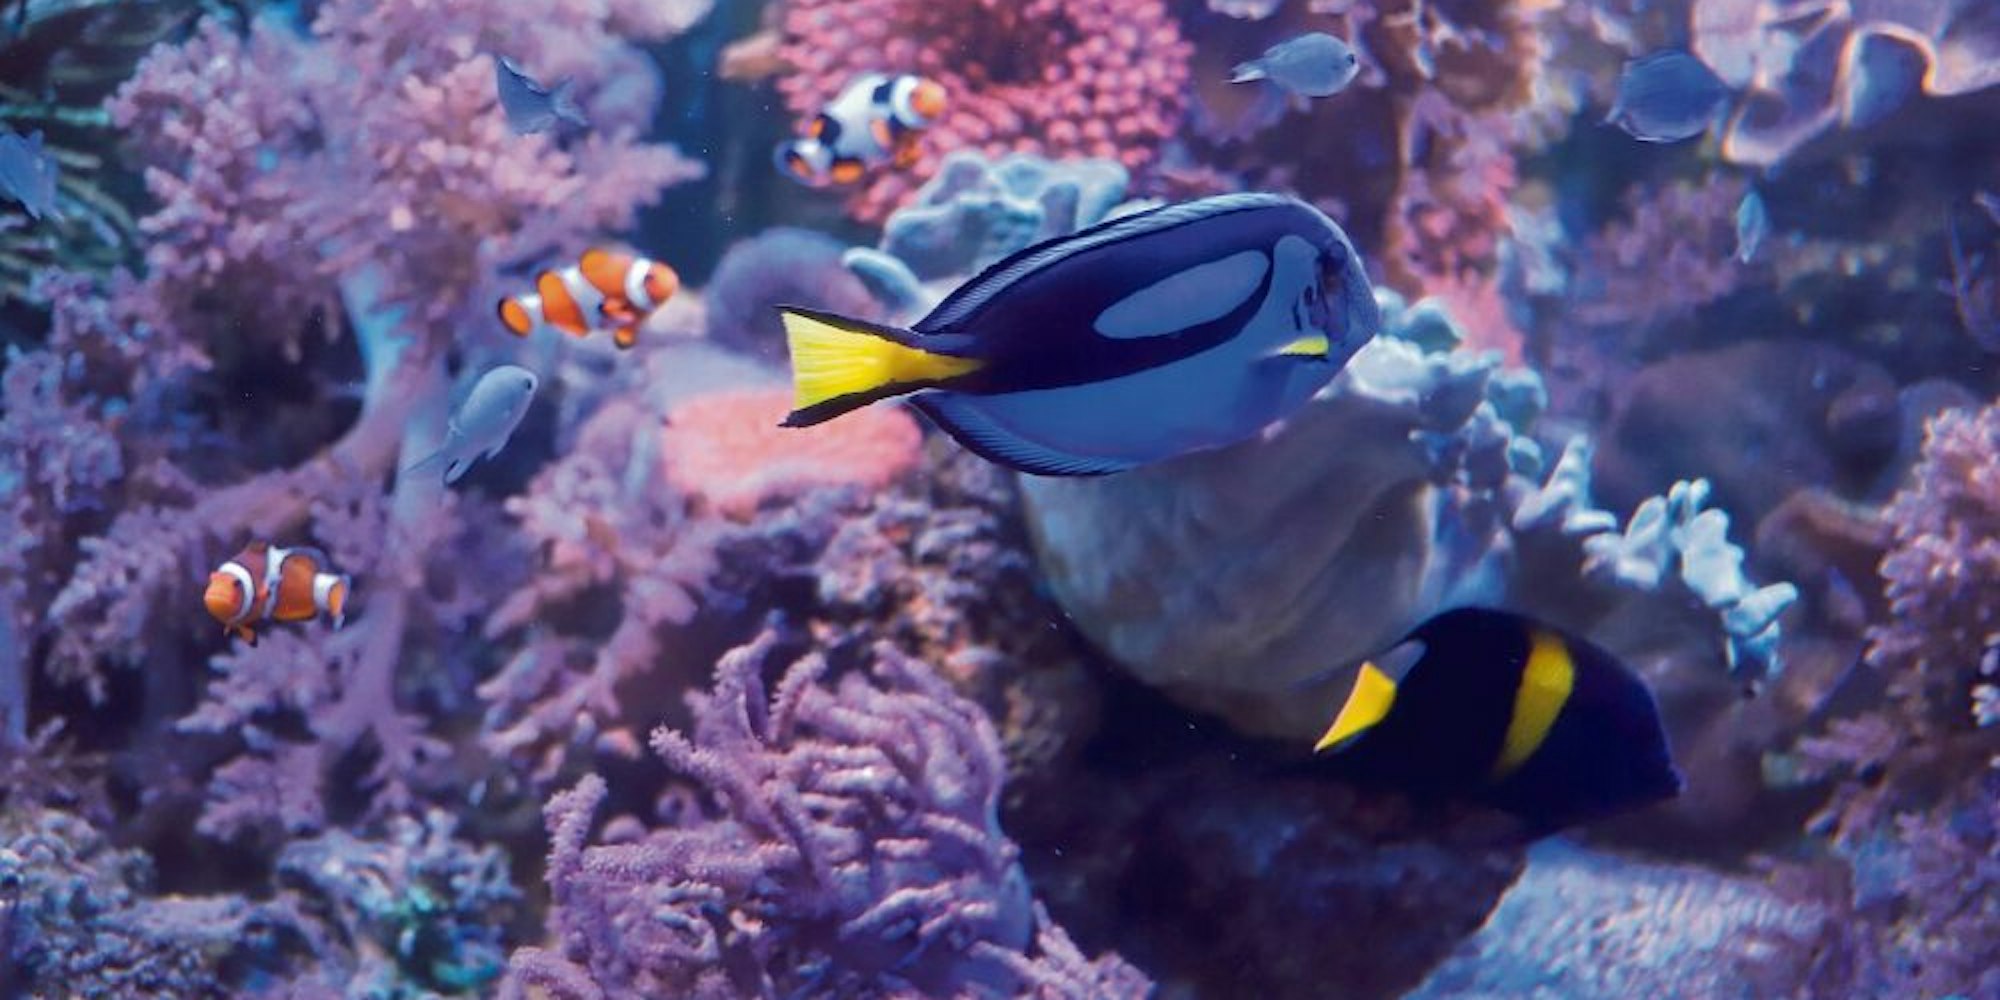 Seit 20 Jahren faszinieren die Korallen und bunten Fische im Aquarium die Besucher.